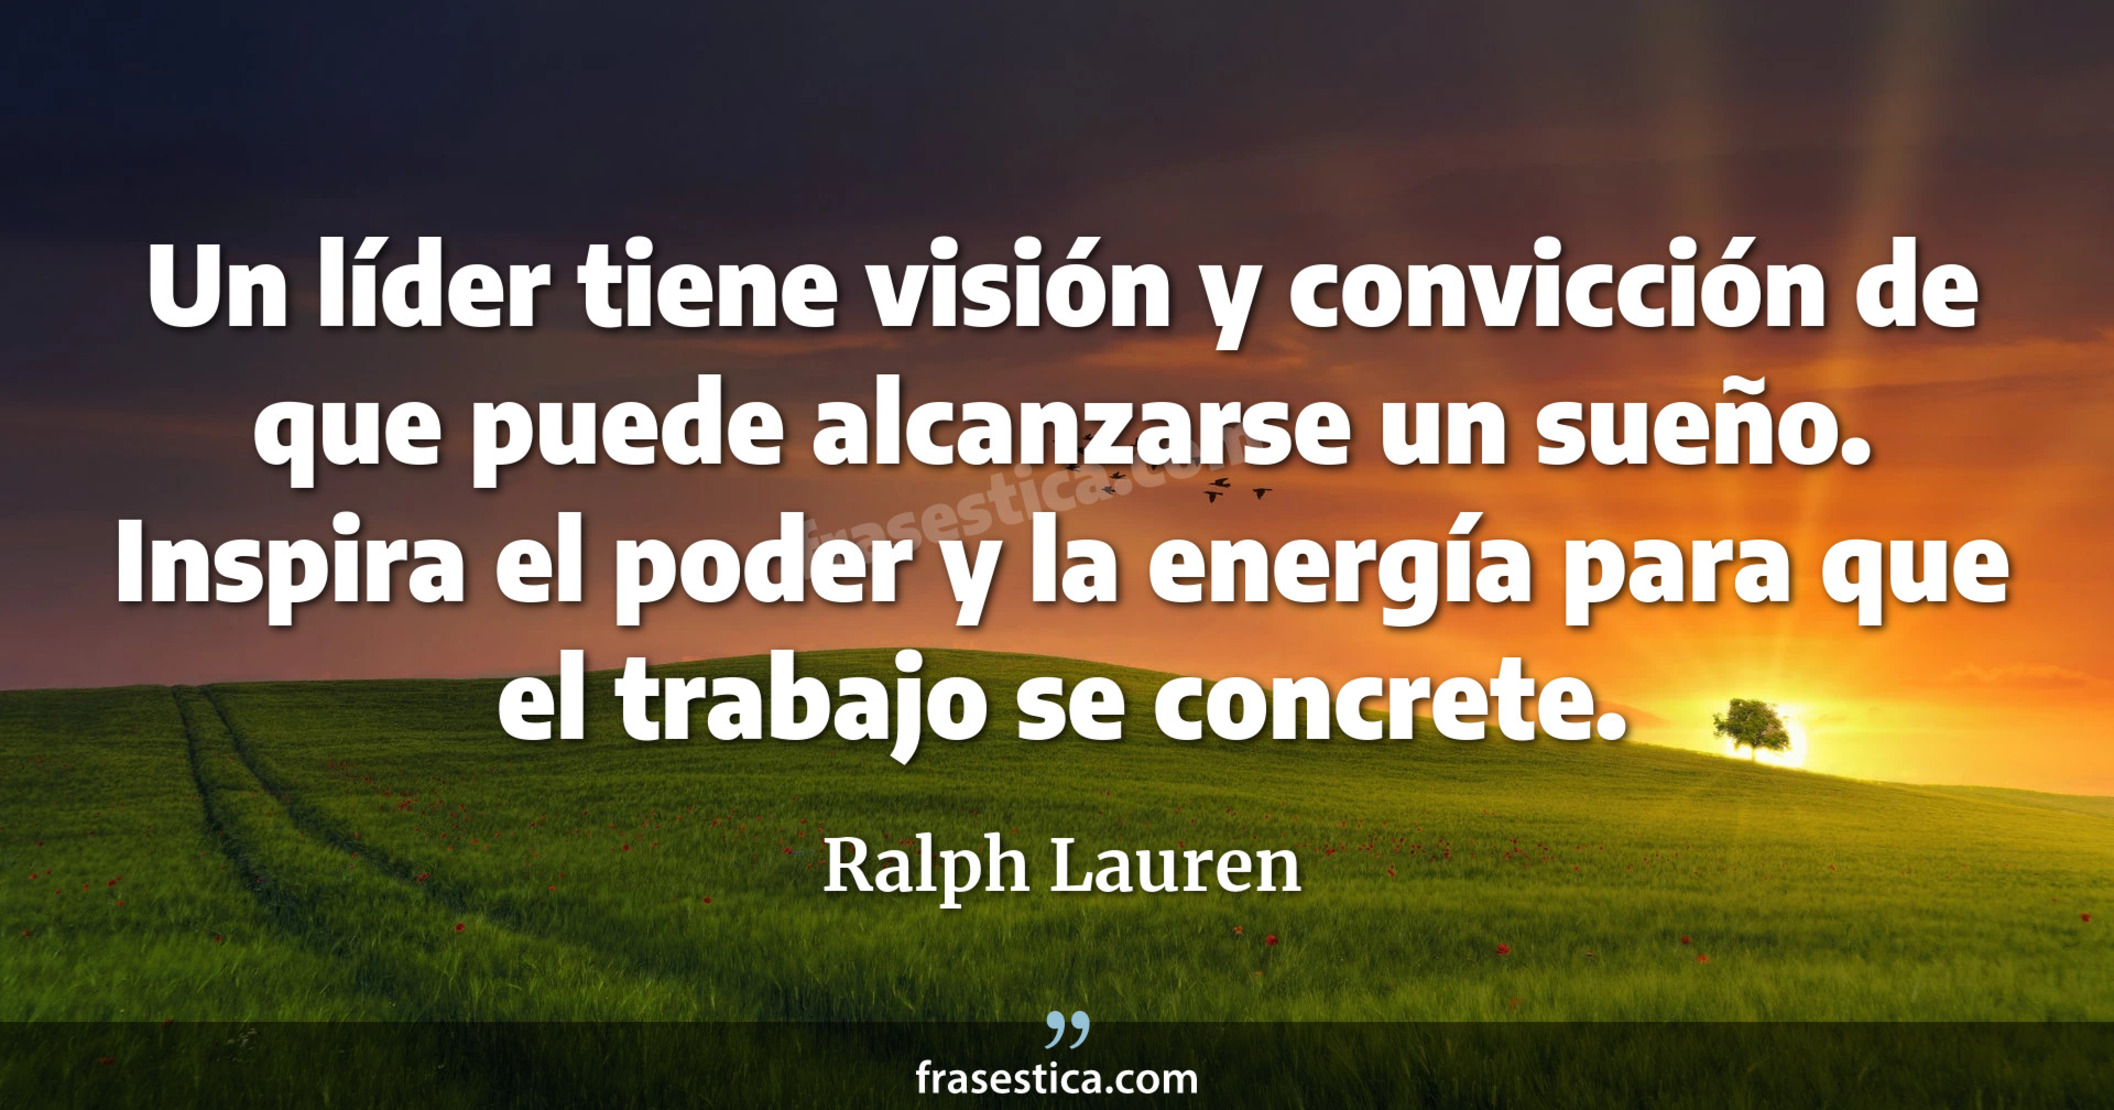 Un líder tiene visión y convicción de que puede alcanzarse un sueño. Inspira el poder y la energía para que el trabajo se concrete. - Ralph Lauren